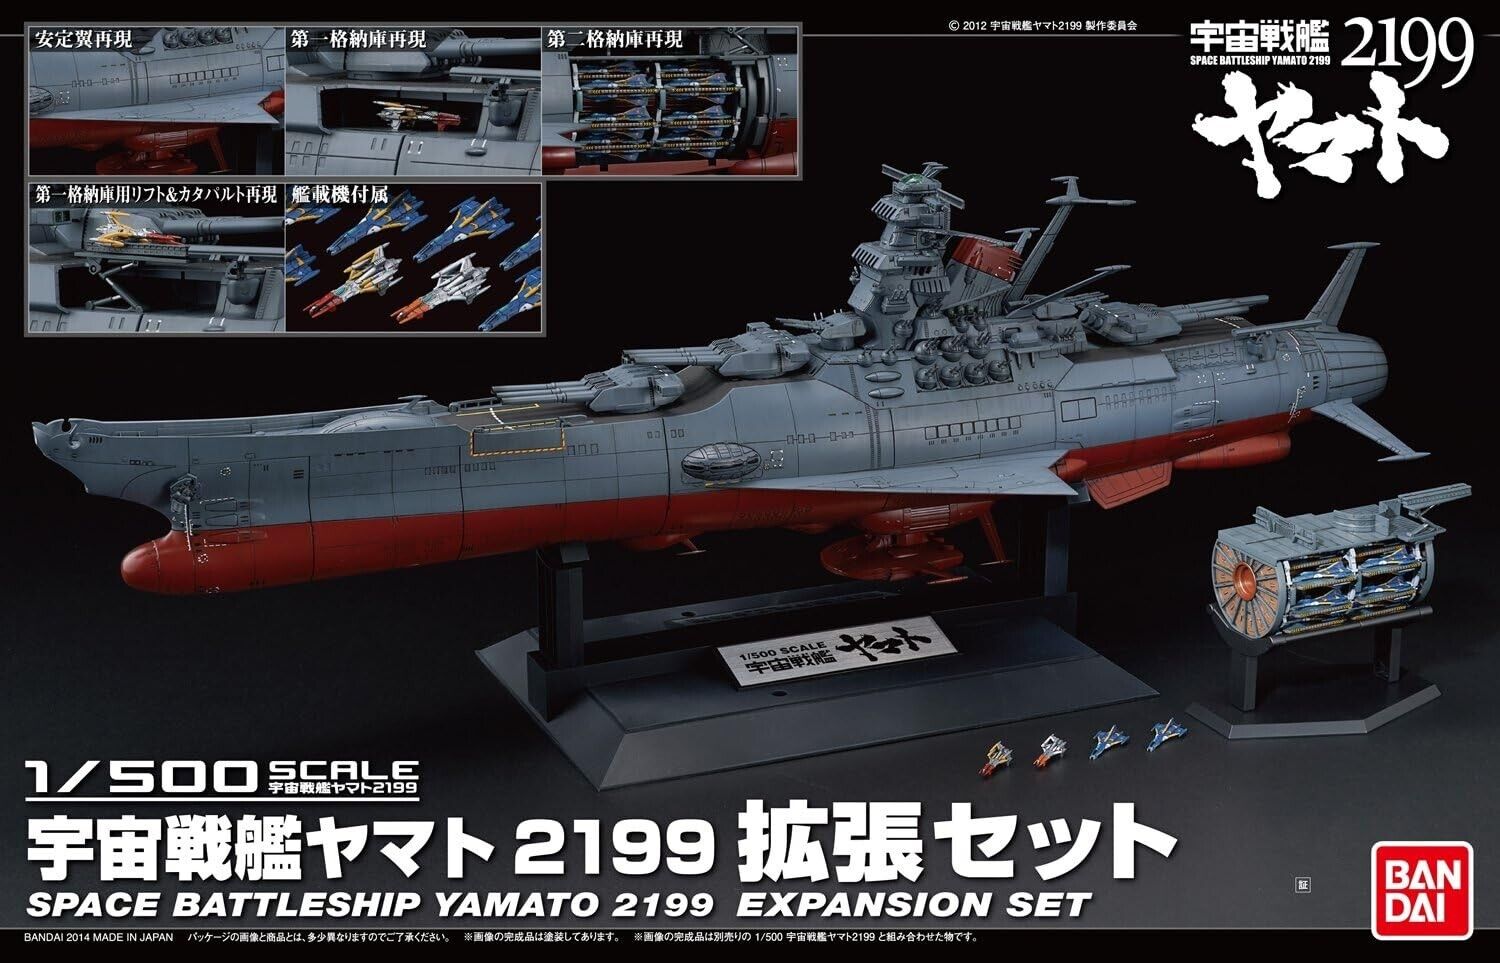 1/500 Space Battleship Yamato 2199 expansion set Space Battleship Yamato/New